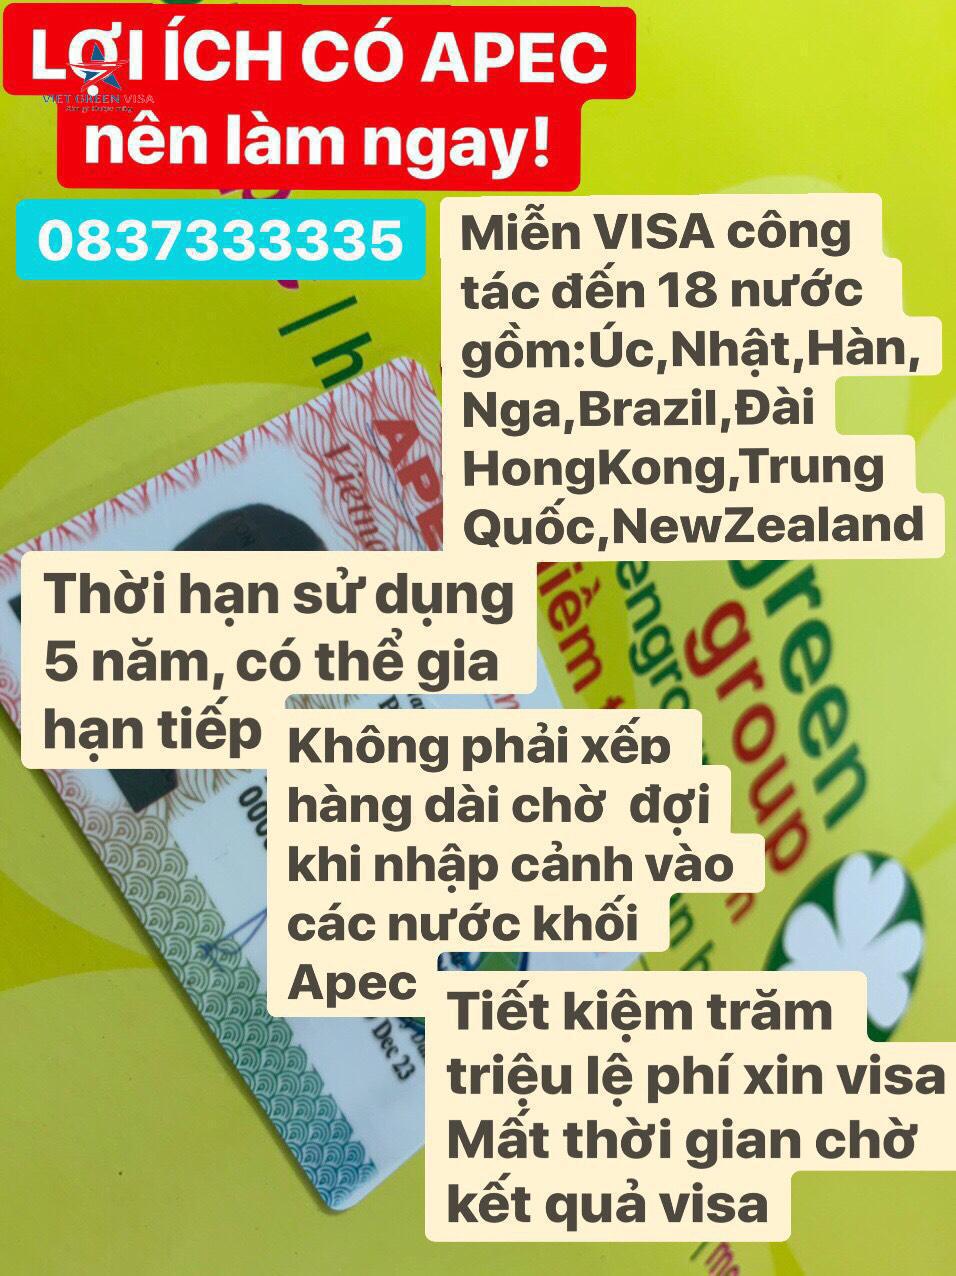 Gia hạn thẻ Apec tại Quảng Bình, gia hạn thẻ Apec Quảng Bình, thẻ Apec Quảng Bình